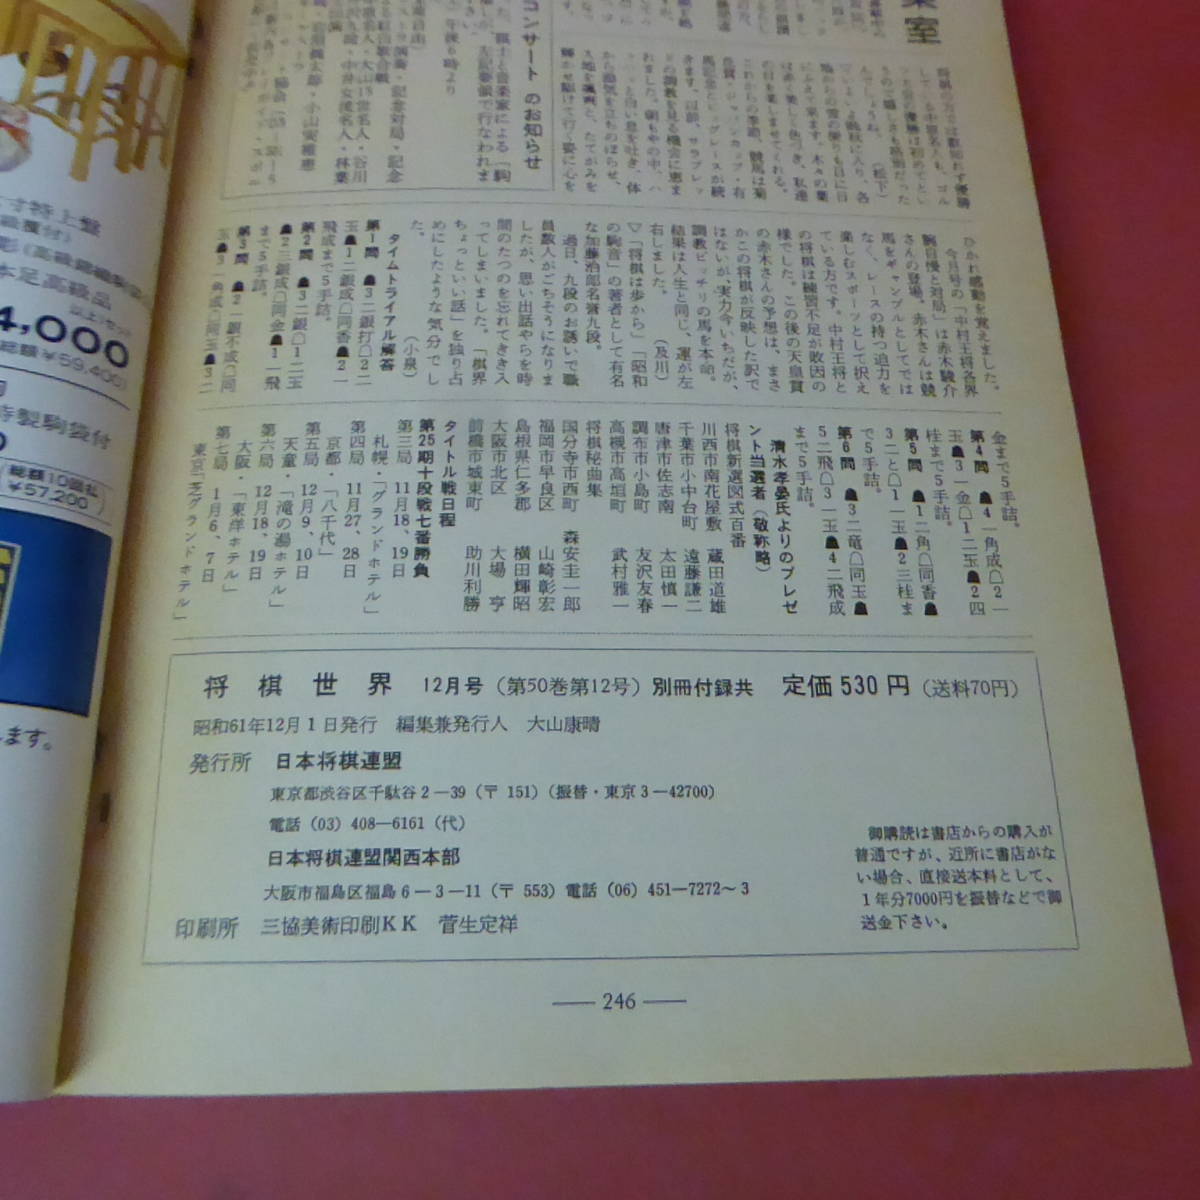 S4-230809* shogi мир 1986.12 месяц номер отдельный выпуск дополнение нет 